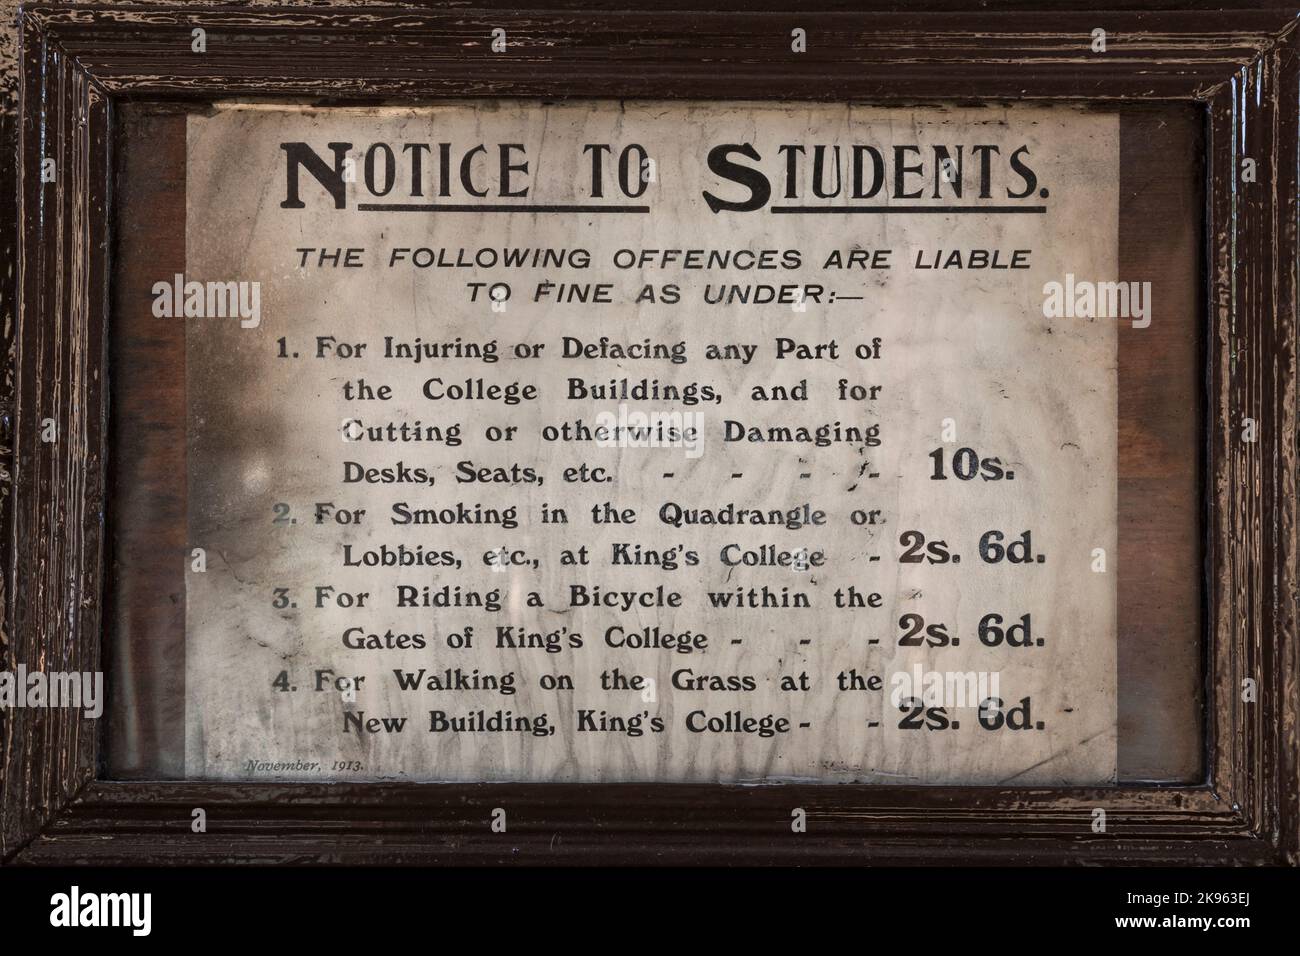 Eine Mitteilung von 1913 an Studenten, in der Geldstrafen für Straftaten aufgeführt sind, University of Aberdeen, Schottland, Großbritannien, Europa Stockfoto